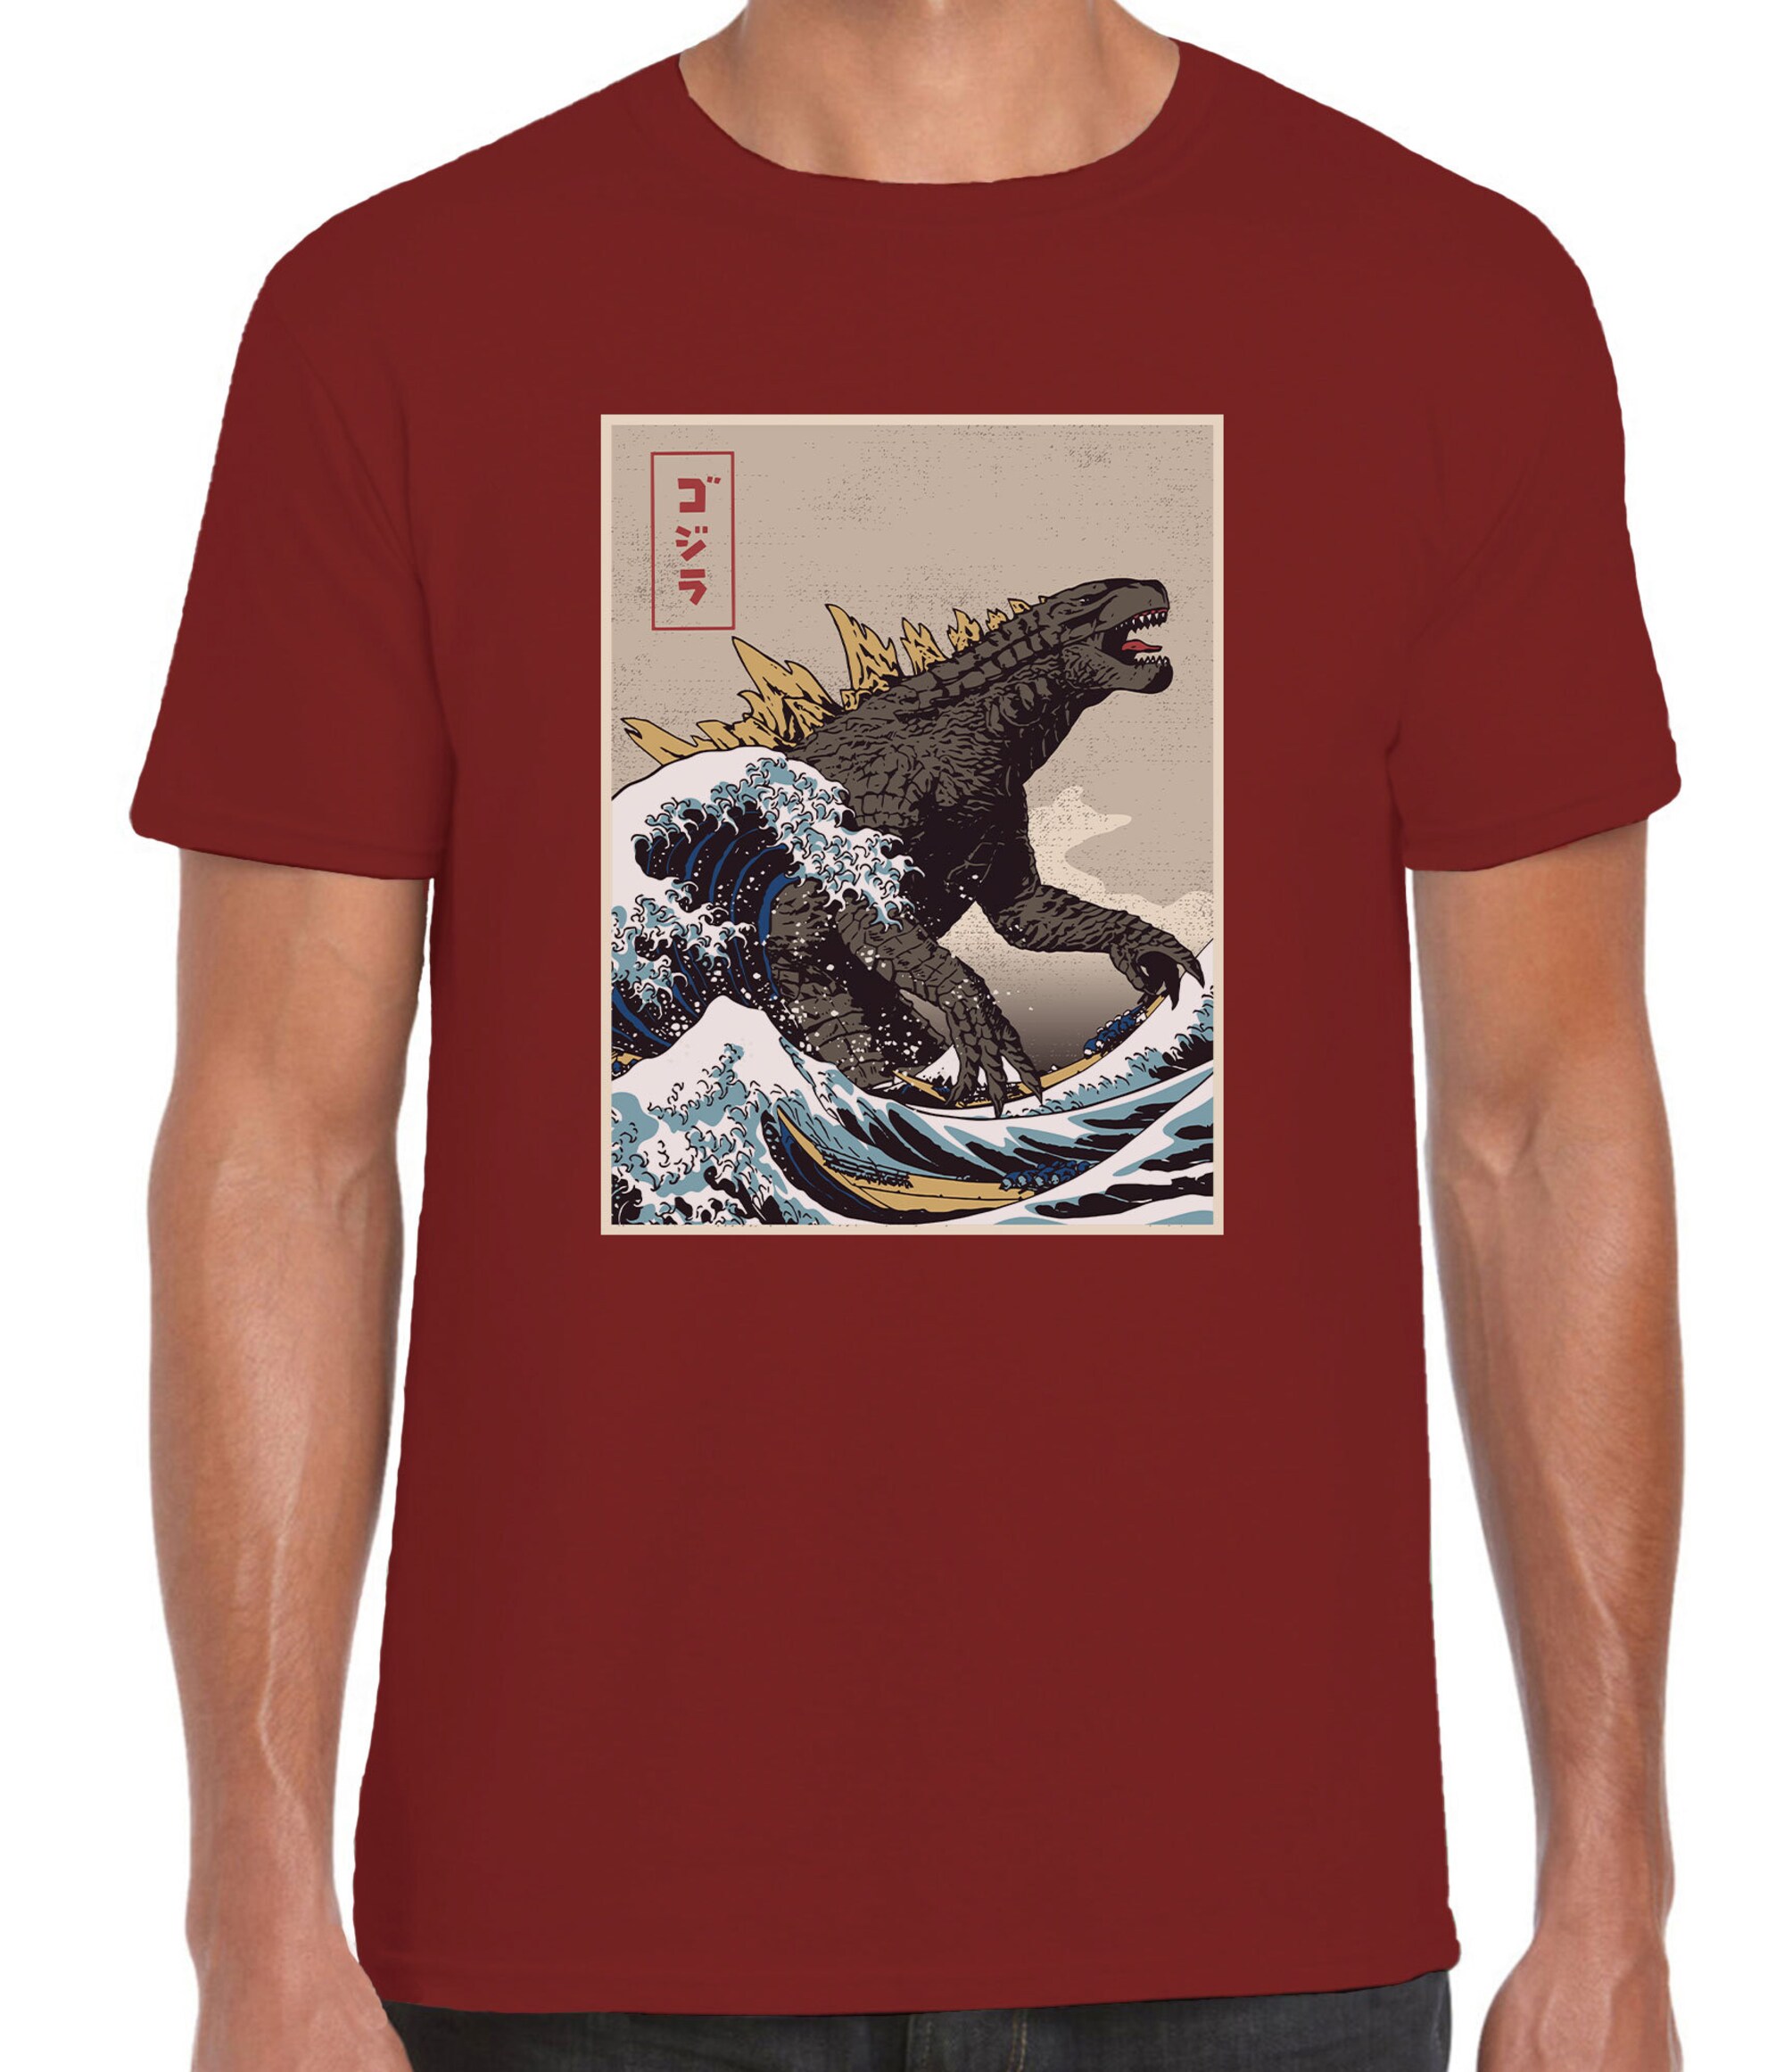 Discover The Great Godzilla off Kanagawa Unisex, The Great Wave Hokusai and Godzilla T-shirt